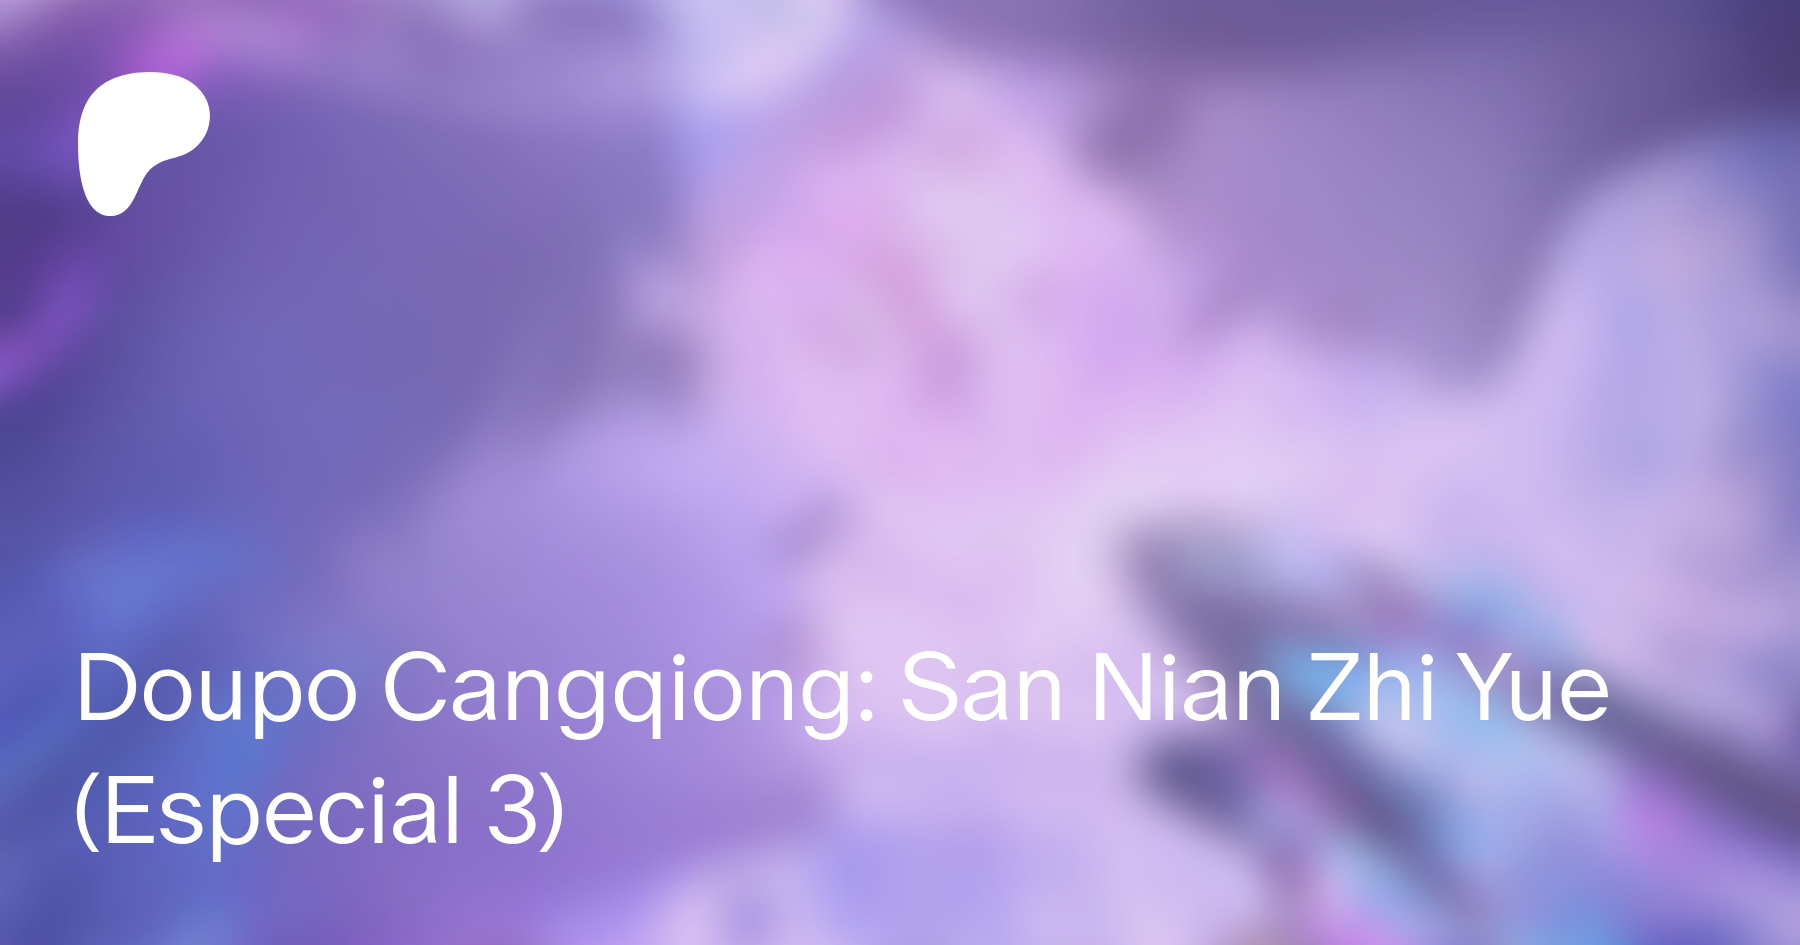 Doupo Cangqiong: San Nian Zhi Yue 